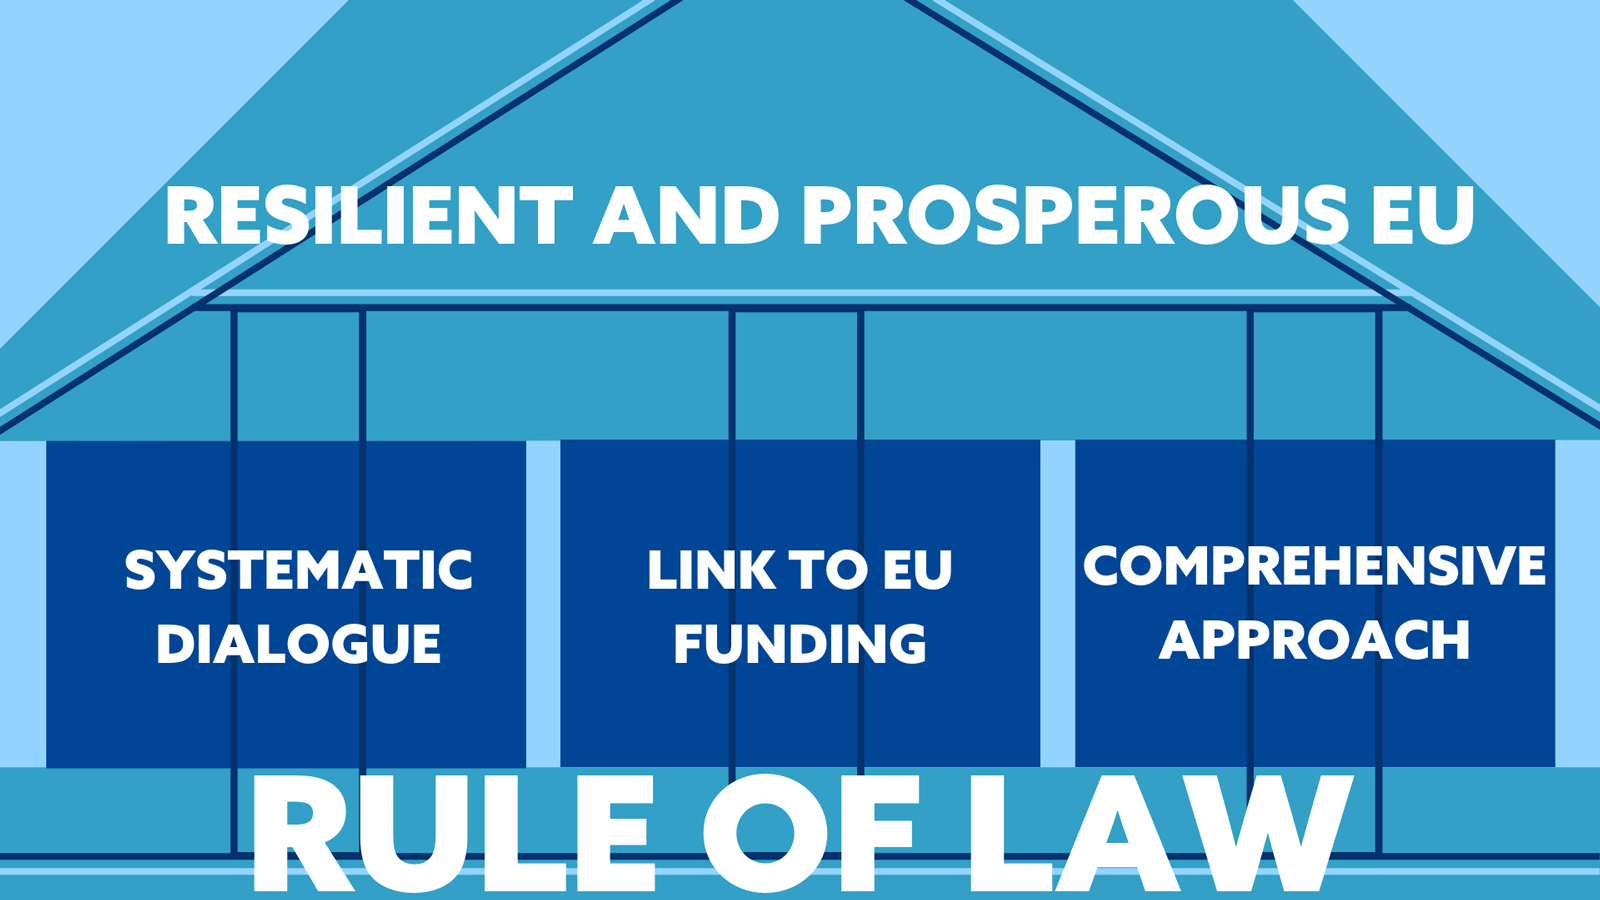 Bilden åskådliggör att rättsstatsprincipen är grunden för ett tryggt och välmående EU. Rättsstatsprincipen stärks av dialog, kopplingar till EU:s budget och samarbete.